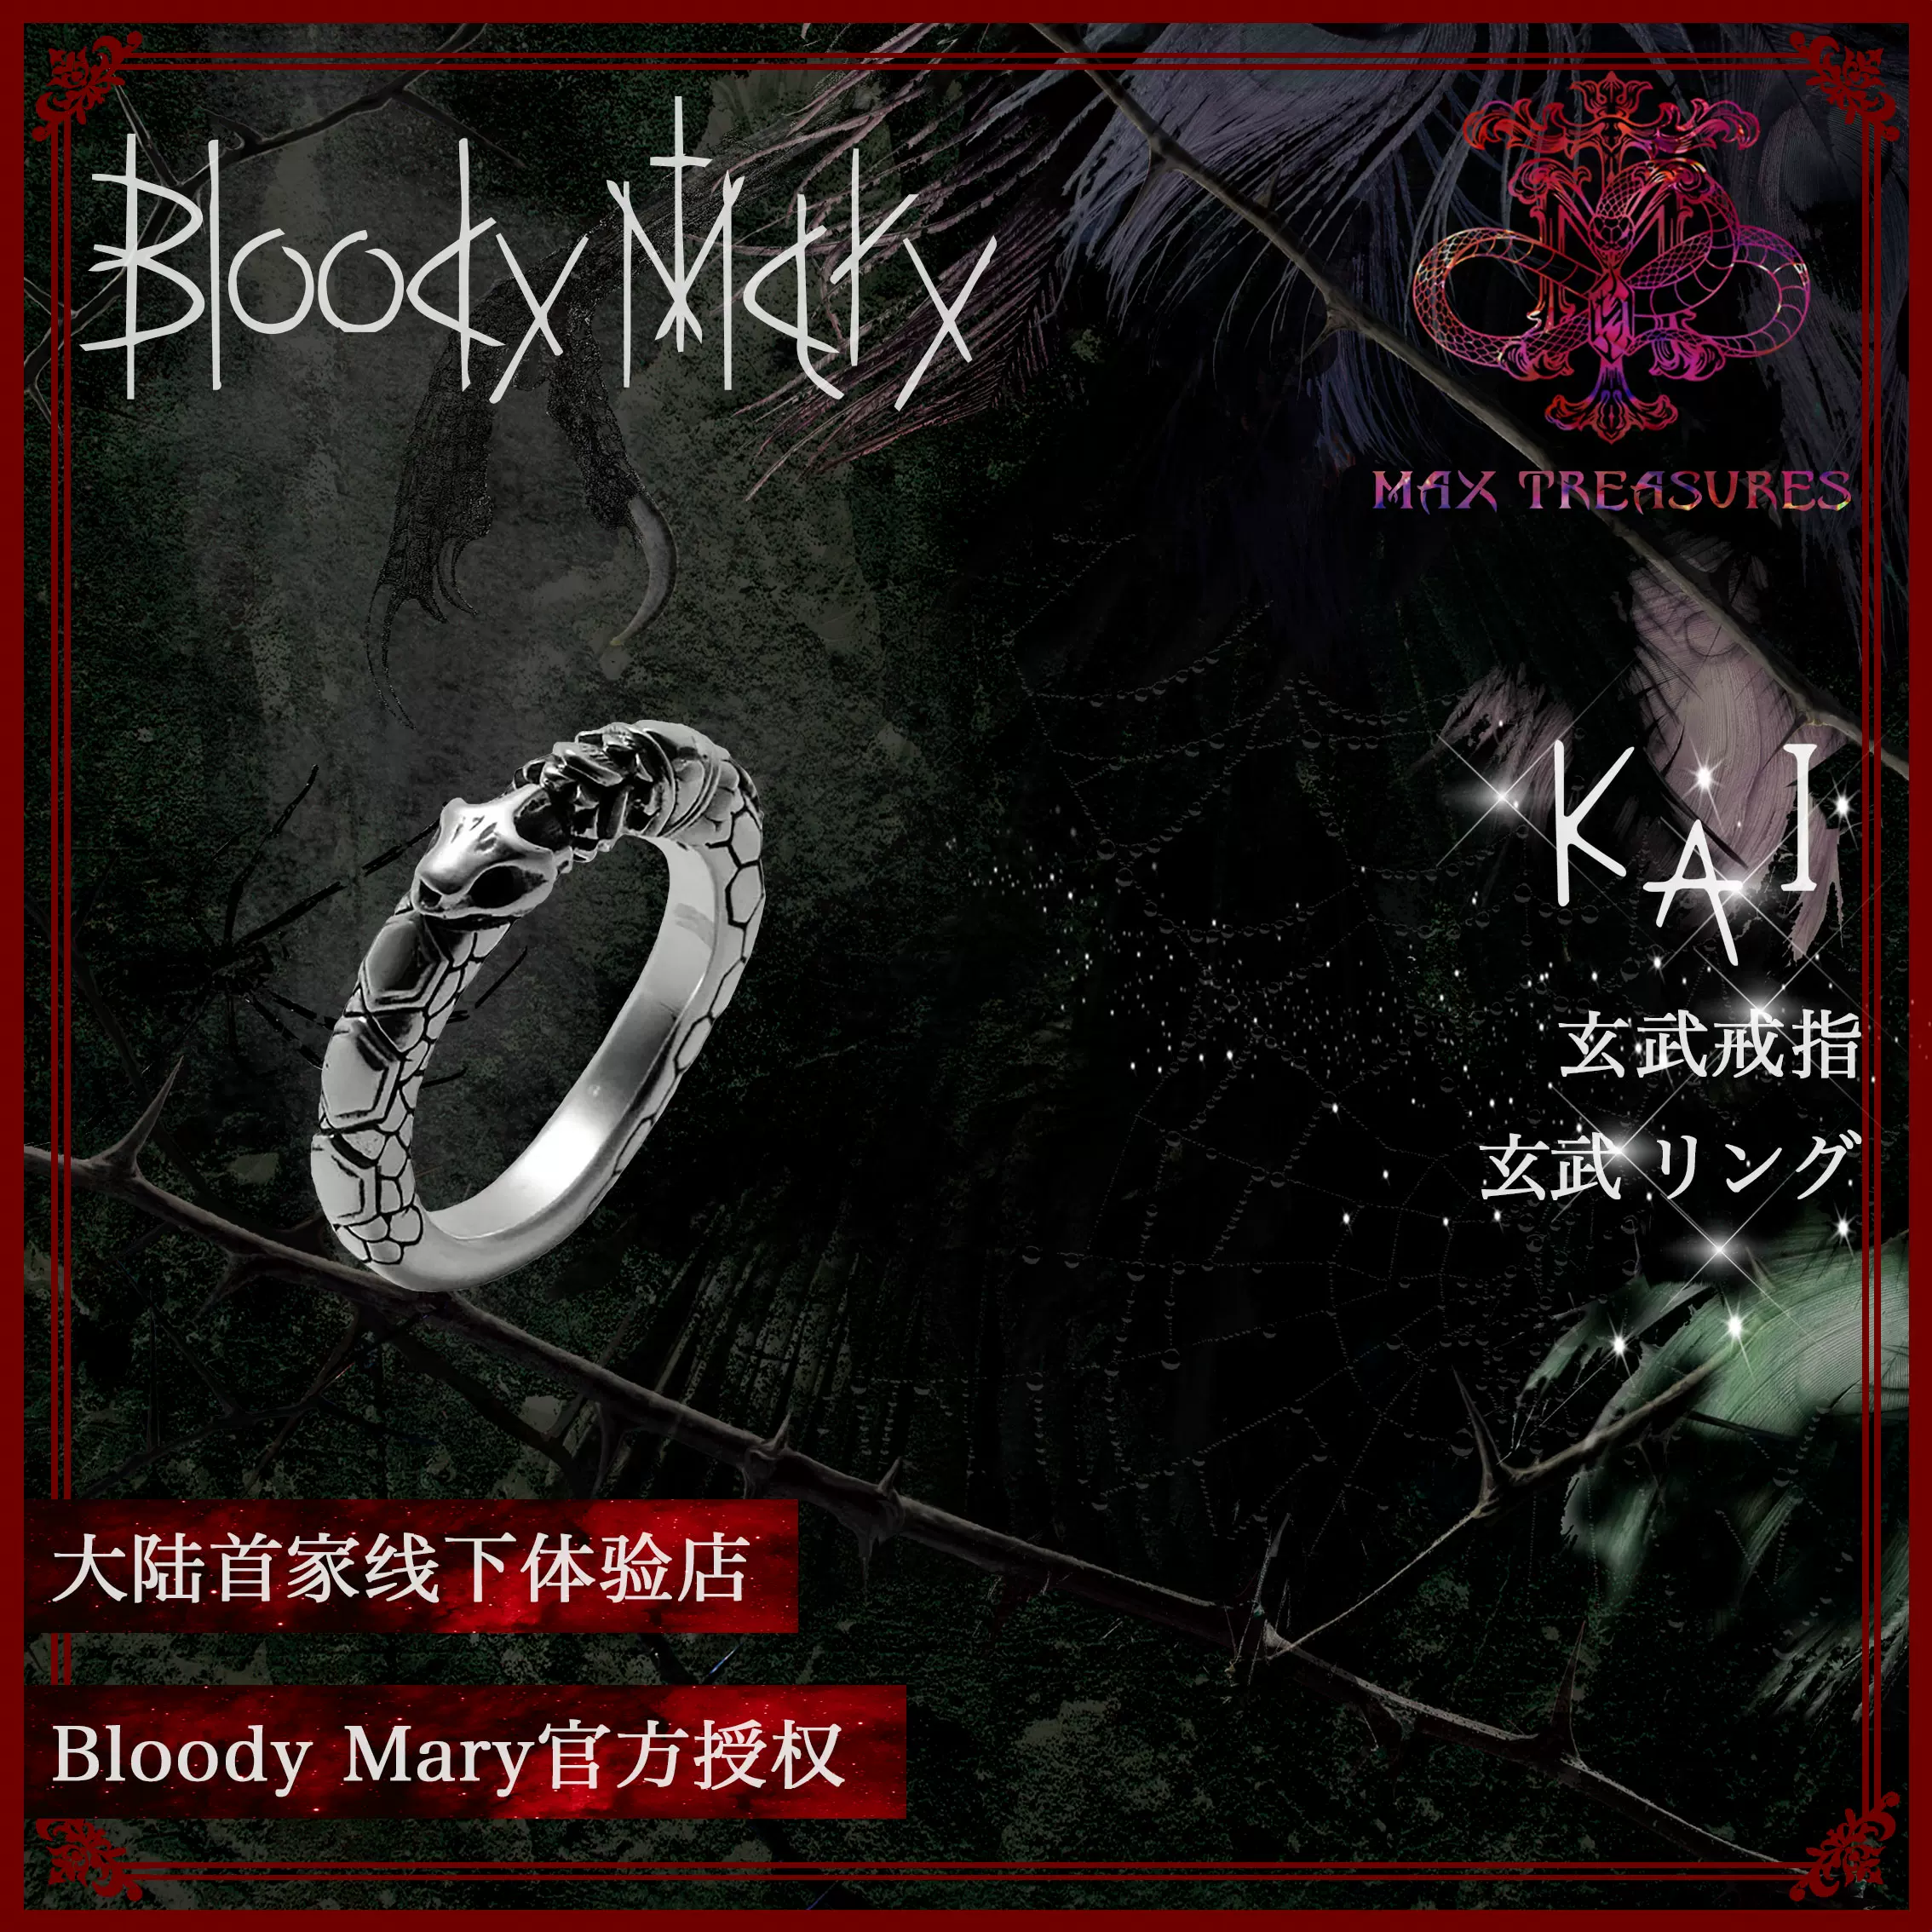 Bloody Mary リング ブラック 玄武 ダイヤ KAI